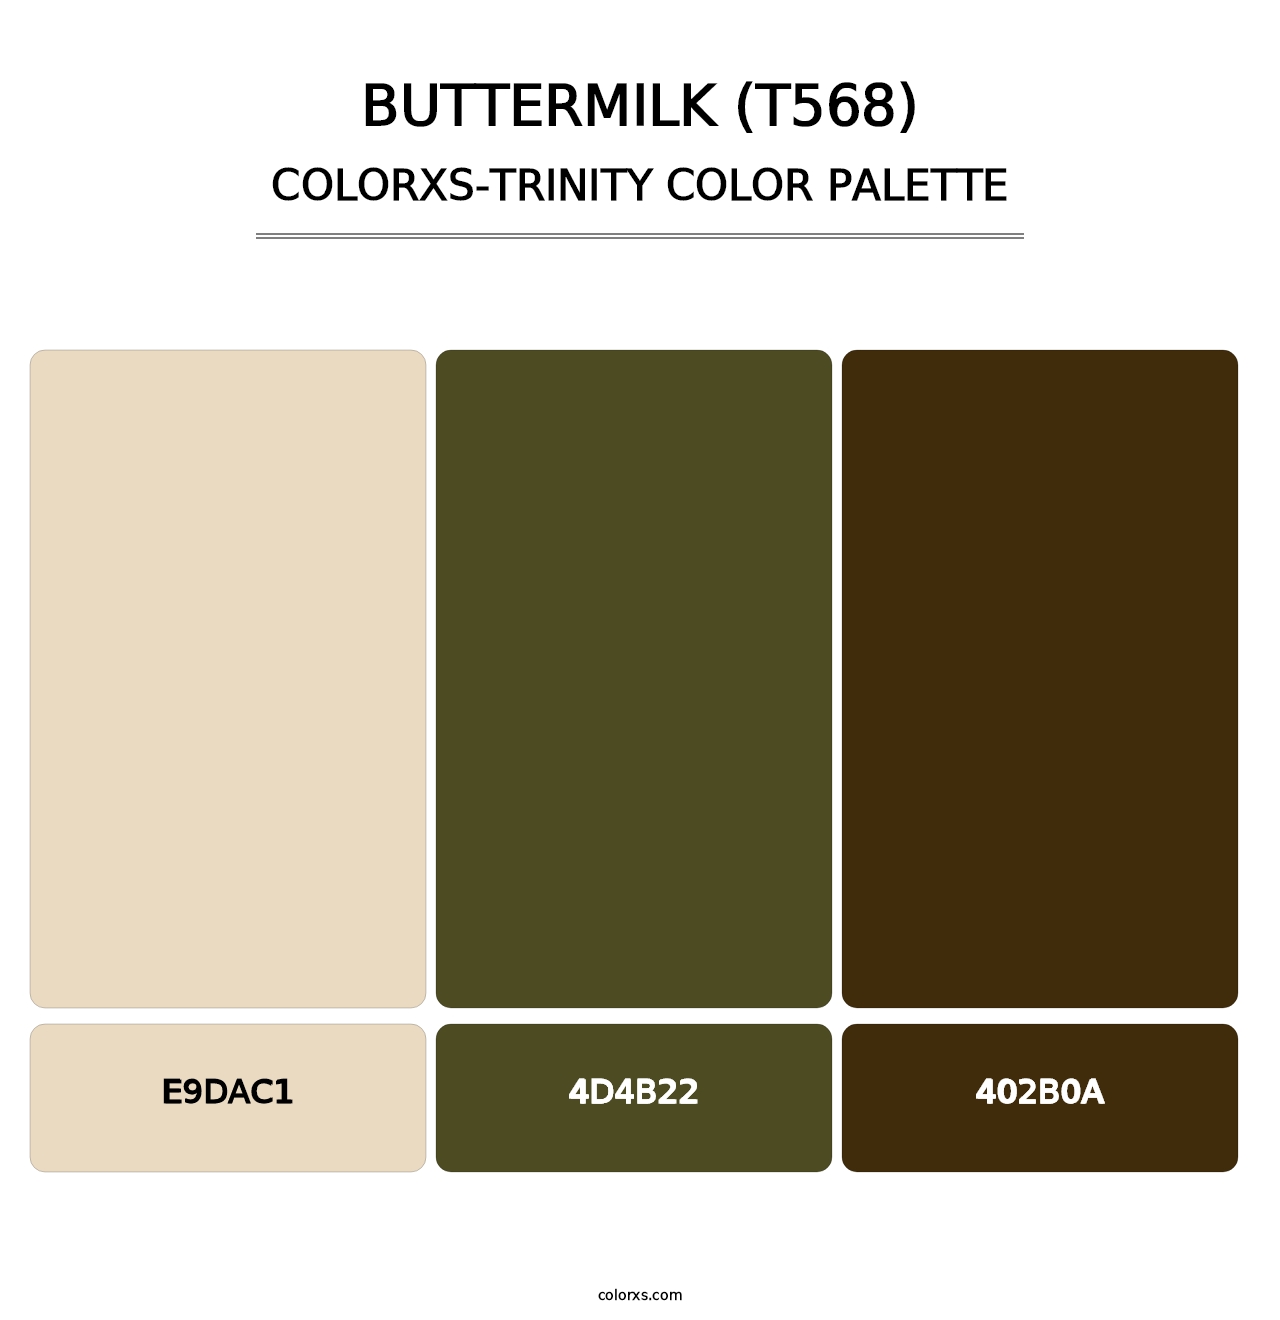 Buttermilk (T568) - Colorxs Trinity Palette